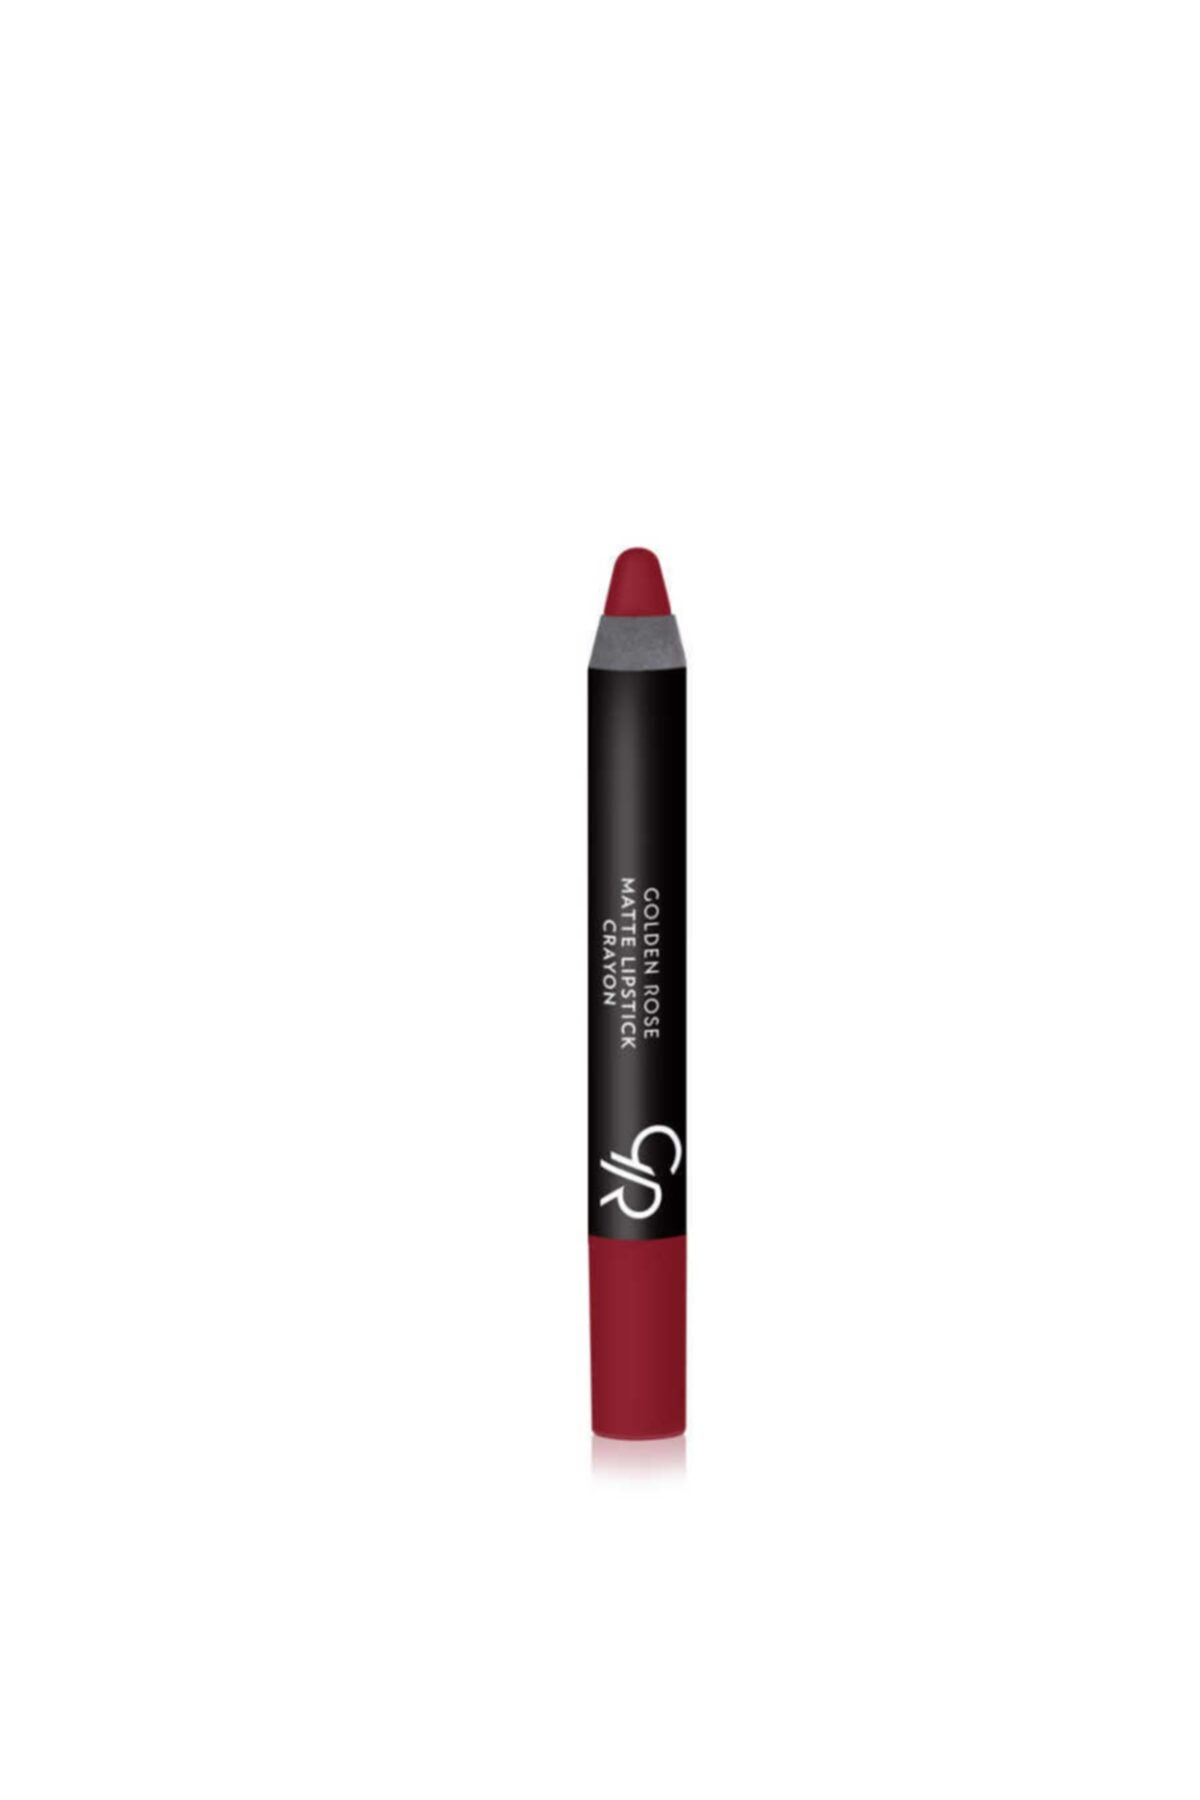 Golden Rose Matte Lipstick Crayon No:04 1 Paket   Ruj